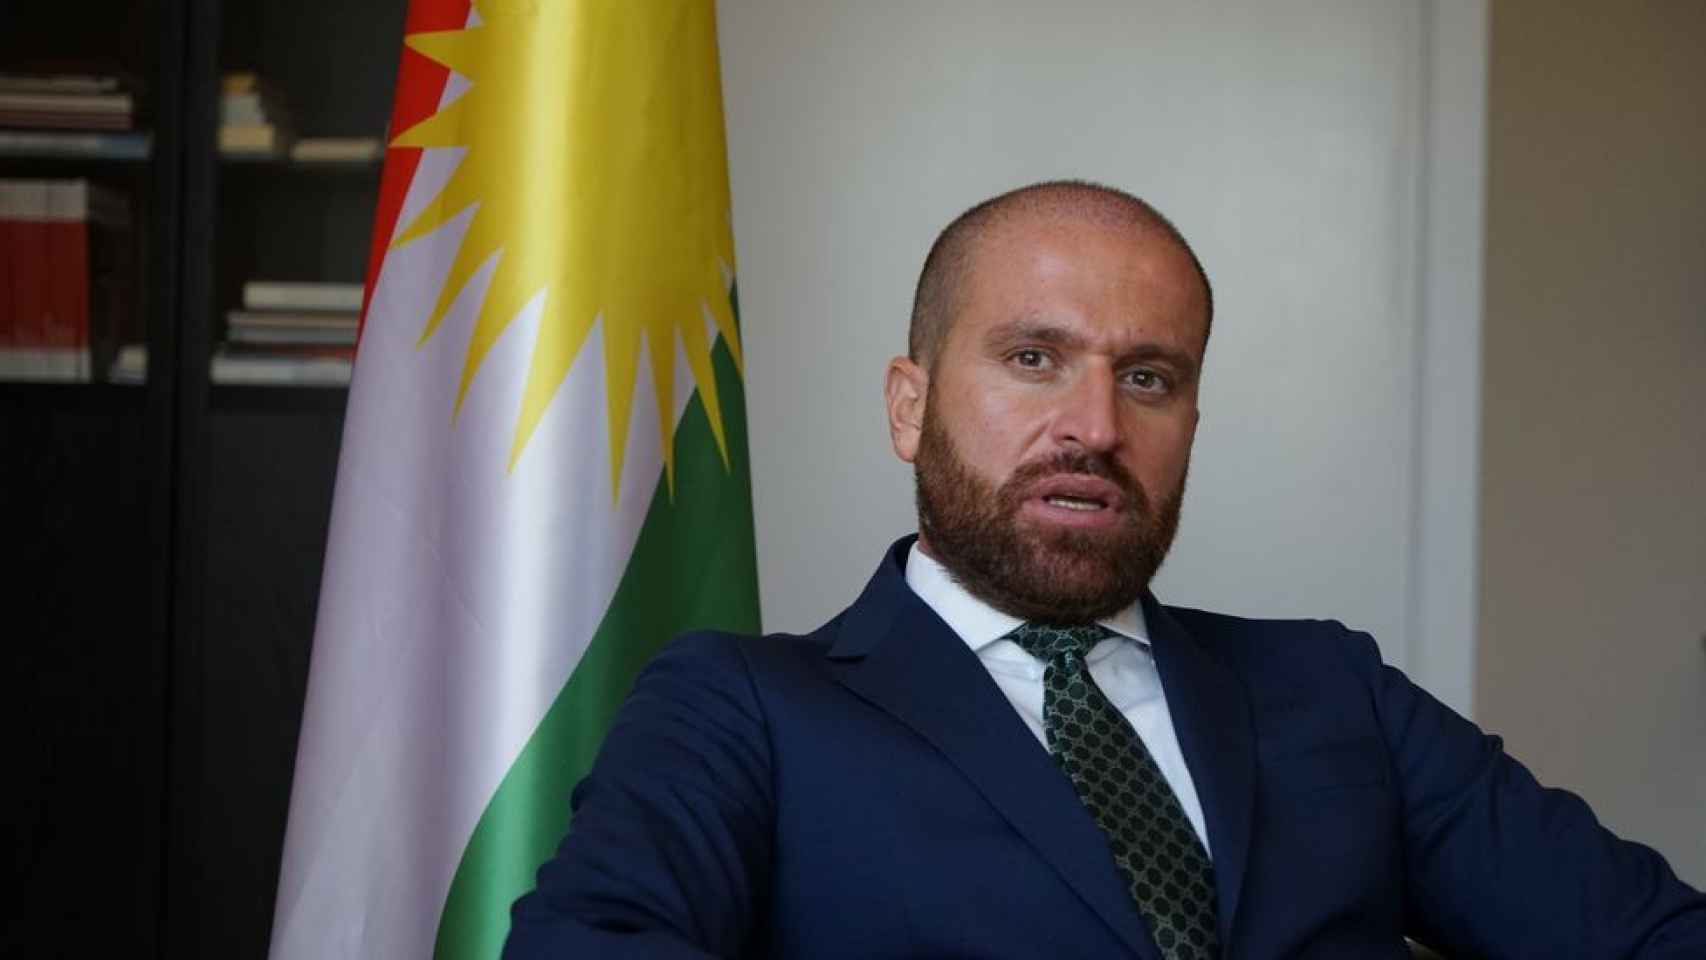 Daban Shadala, representante del Gobierno regional kurdo en España